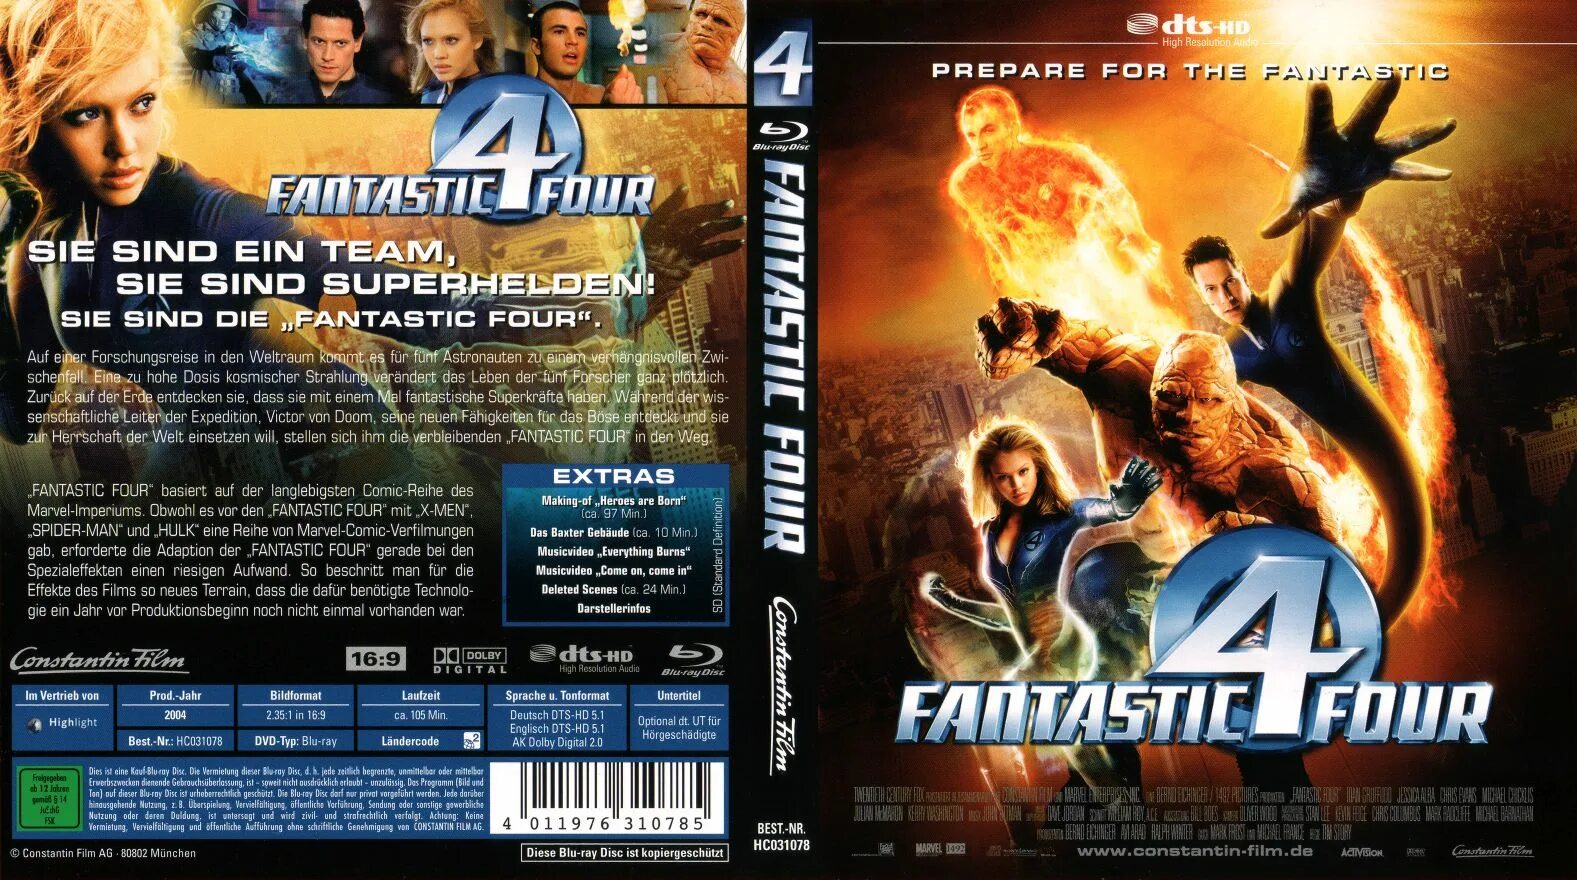 Blu ray магическая битва 2. Фантастическая четвёрка 2 двд. Фантастическая четверка 2005 Blu ray. Fantastic four 2005 Blu ray DVD. Фантастическая четверка 2005 Постер.